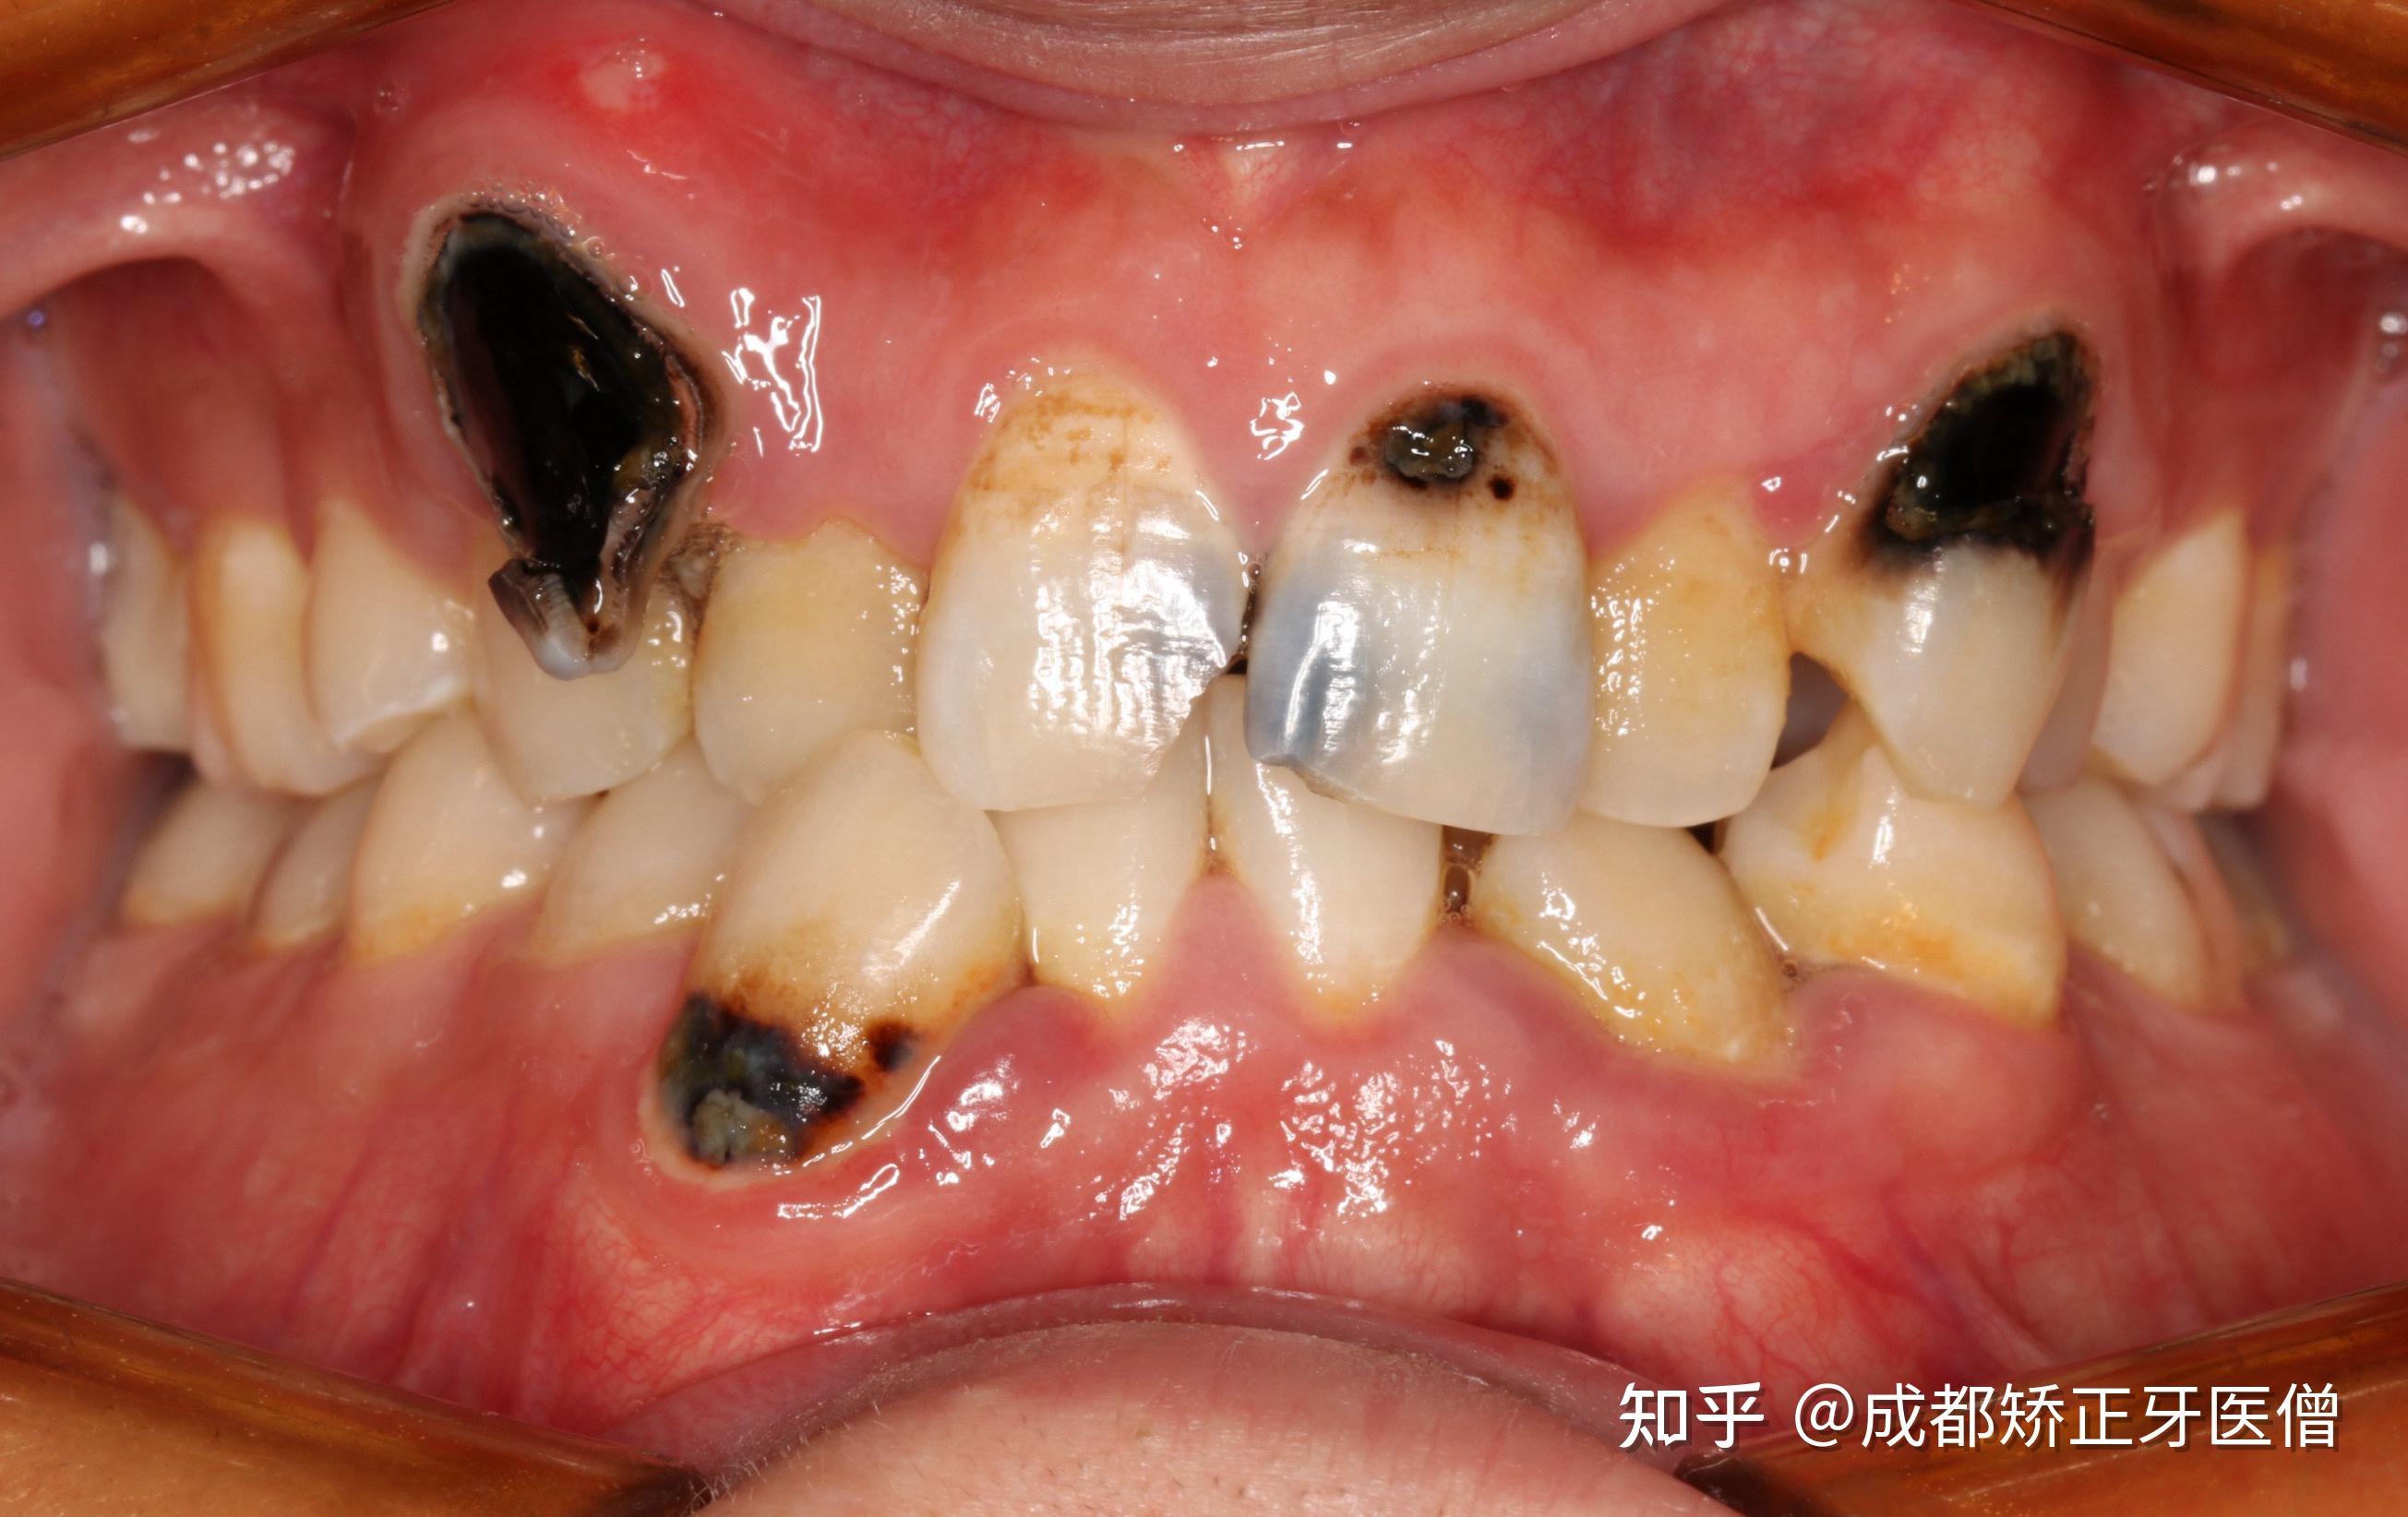 牙医碰见最烂的牙有多烂? 